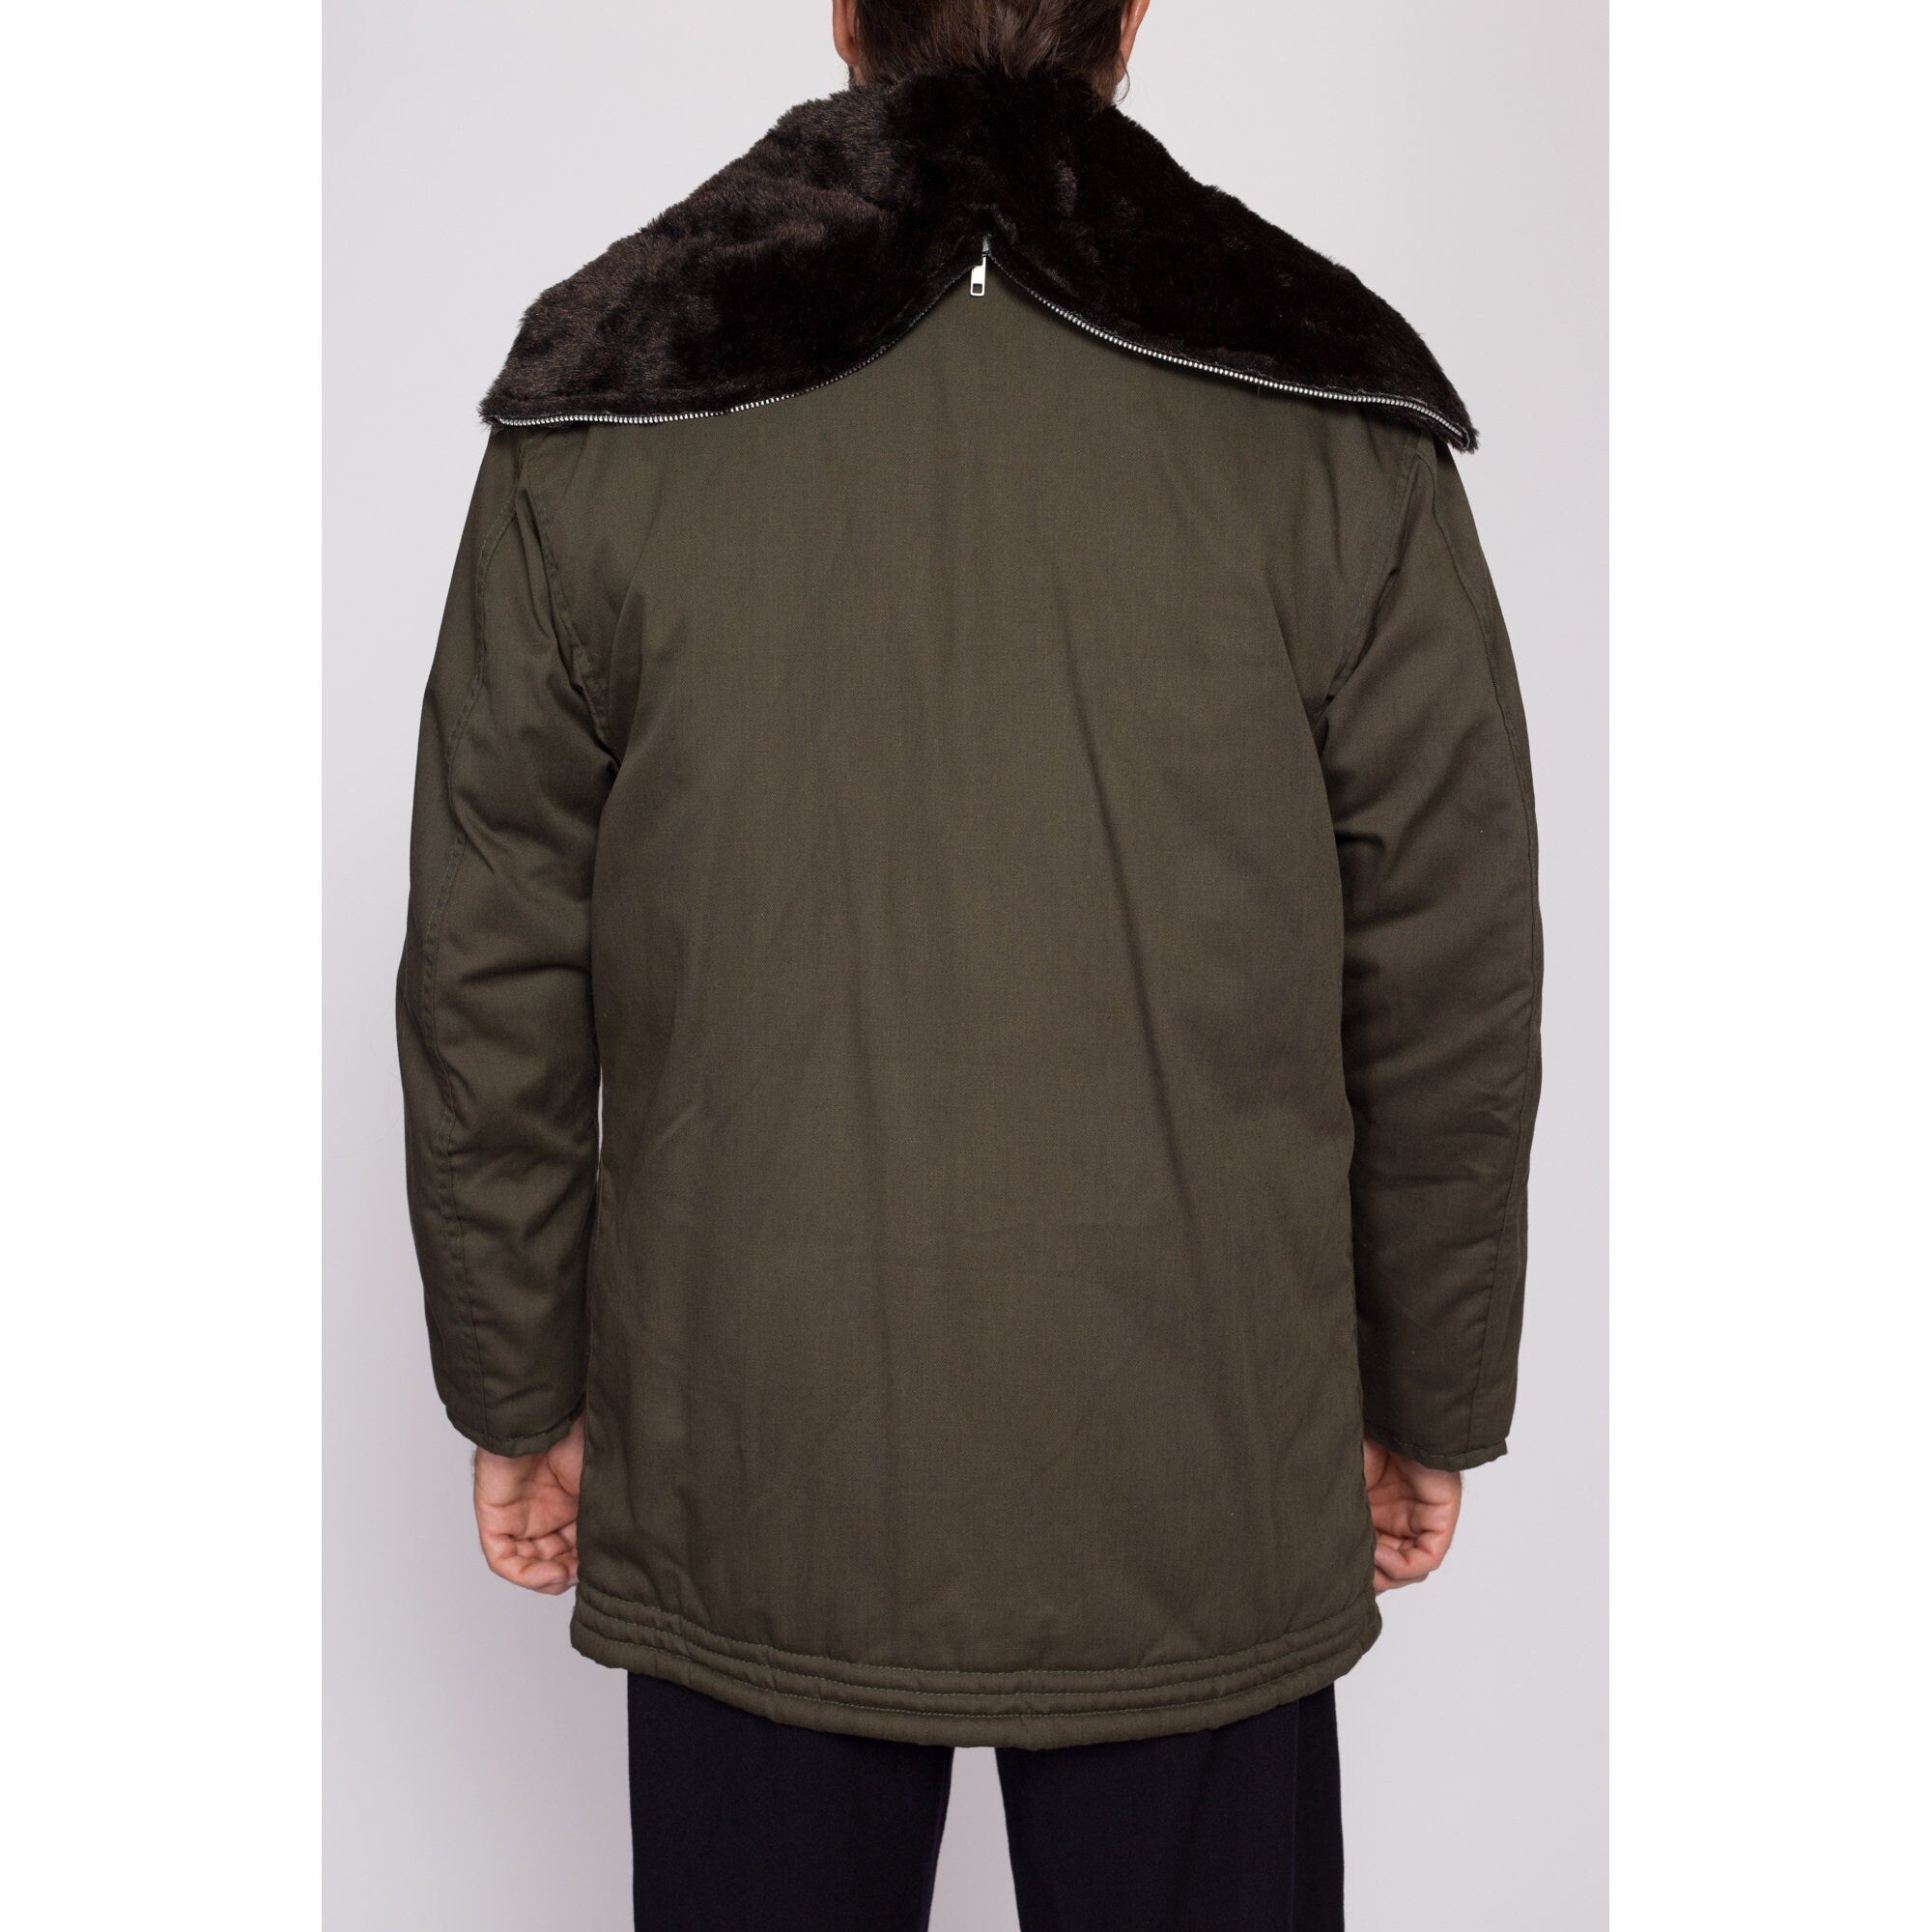 80s Golden Fleece Hooded Army Green Parka Jacket - Men's Medium Short